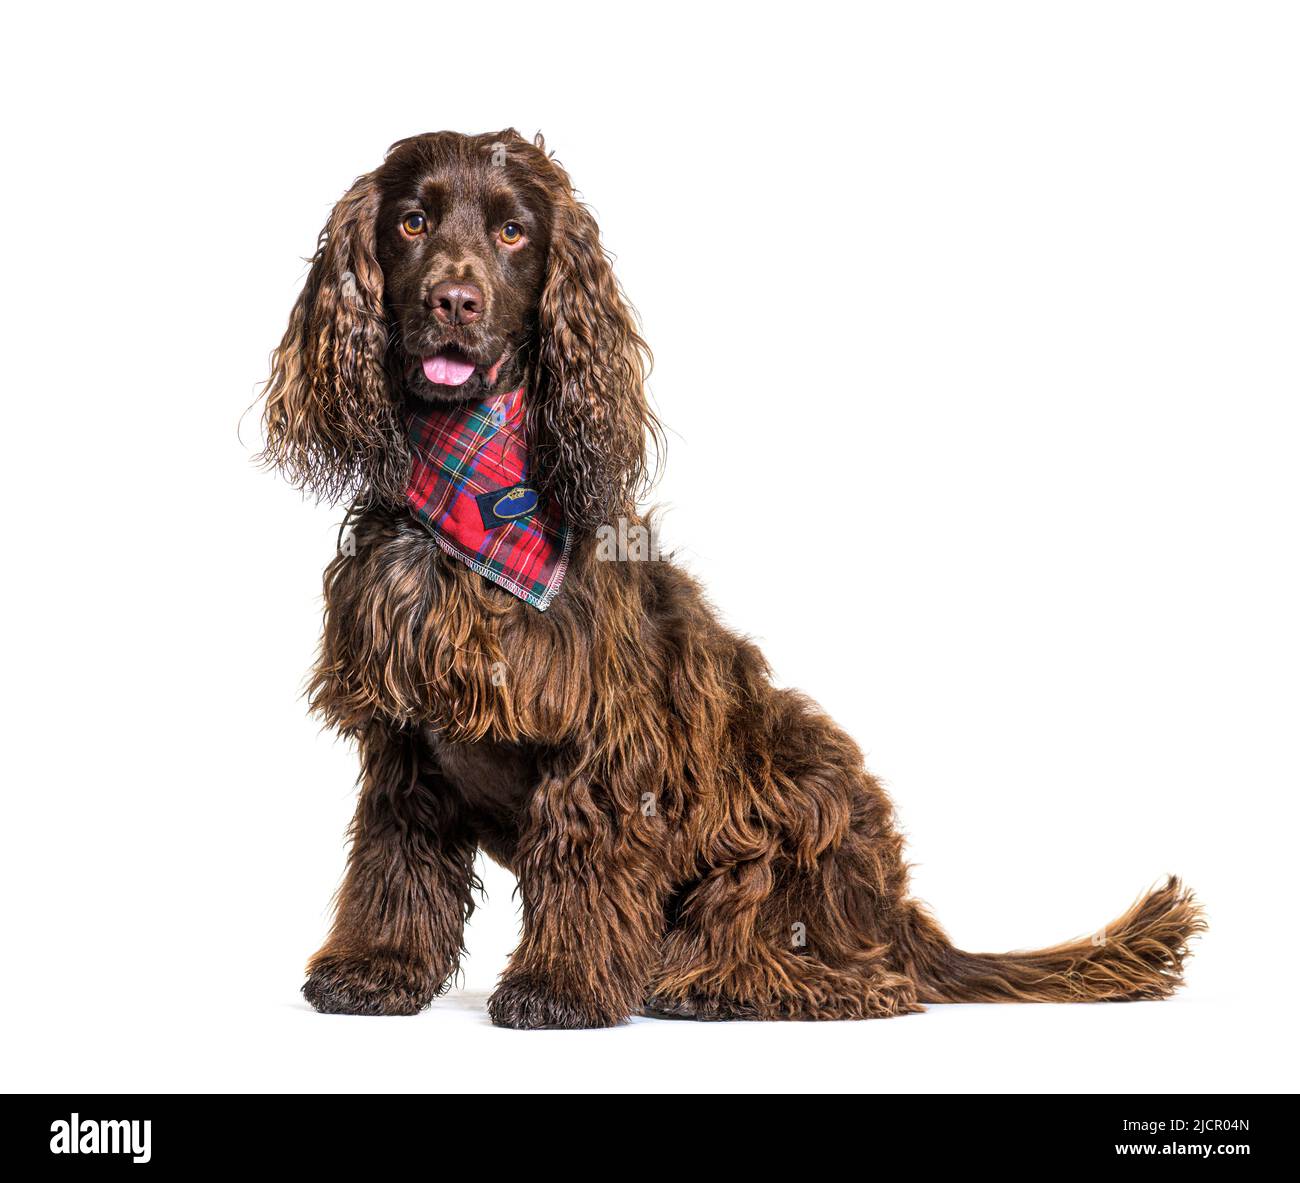 Inglés cocker spaniel perro con una bufanda roja Foto de stock